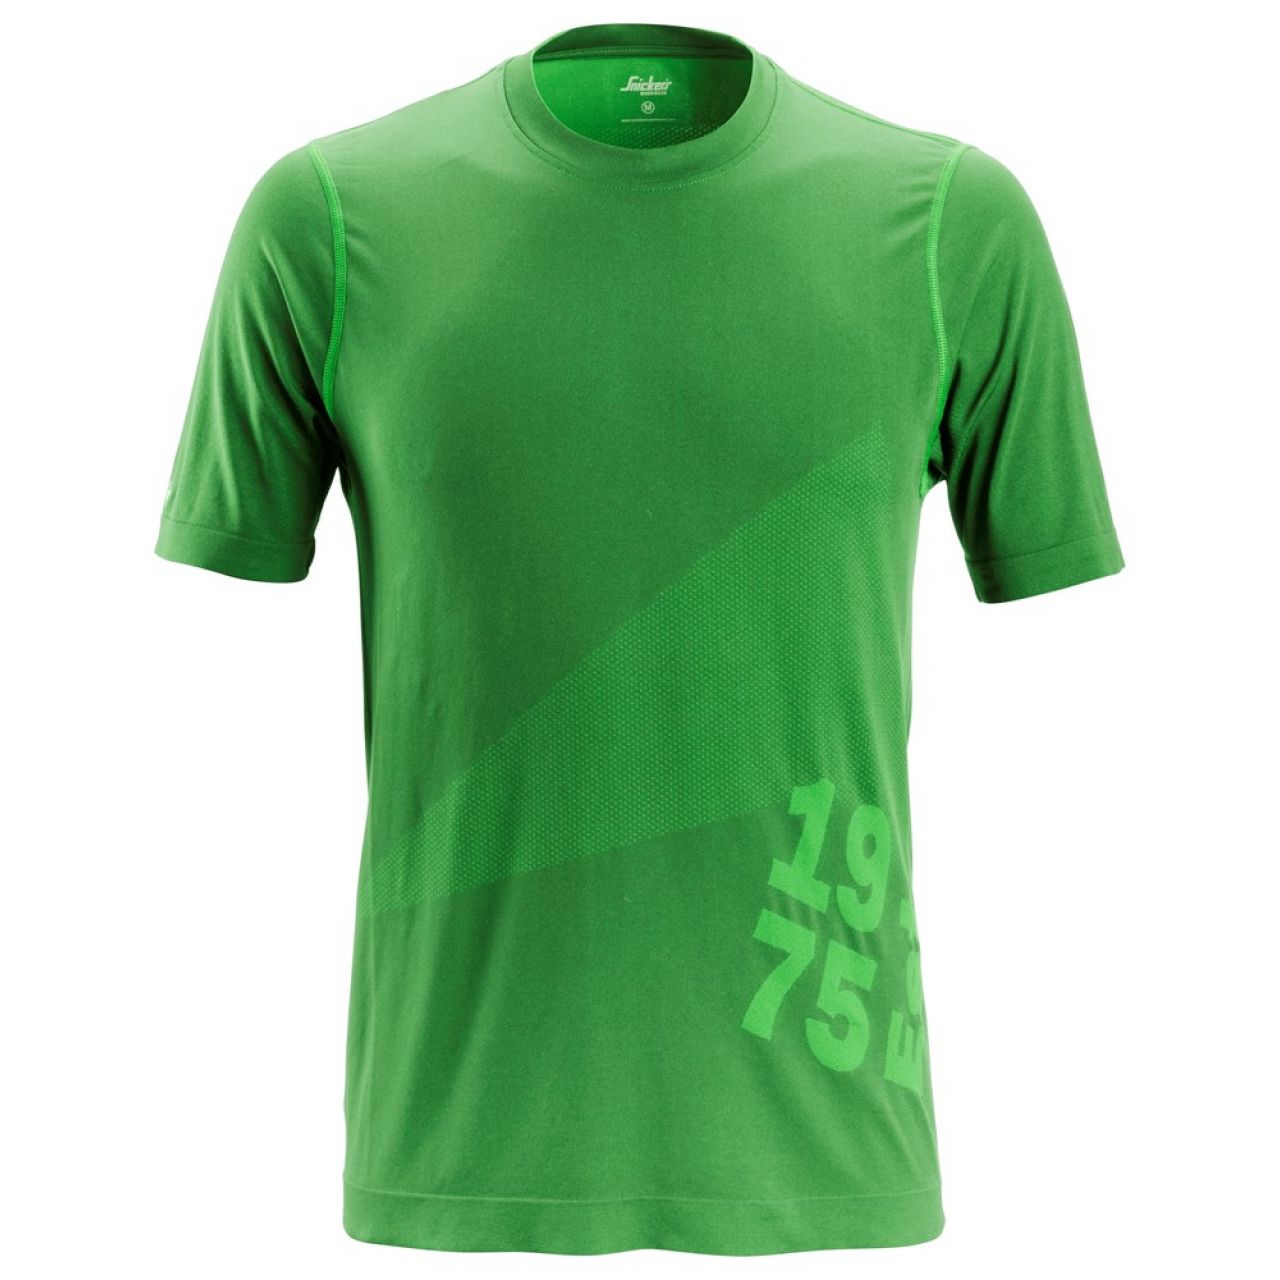 2519 Camiseta de manga corta FlexiWork 37.5® Tech verde manzana talla S